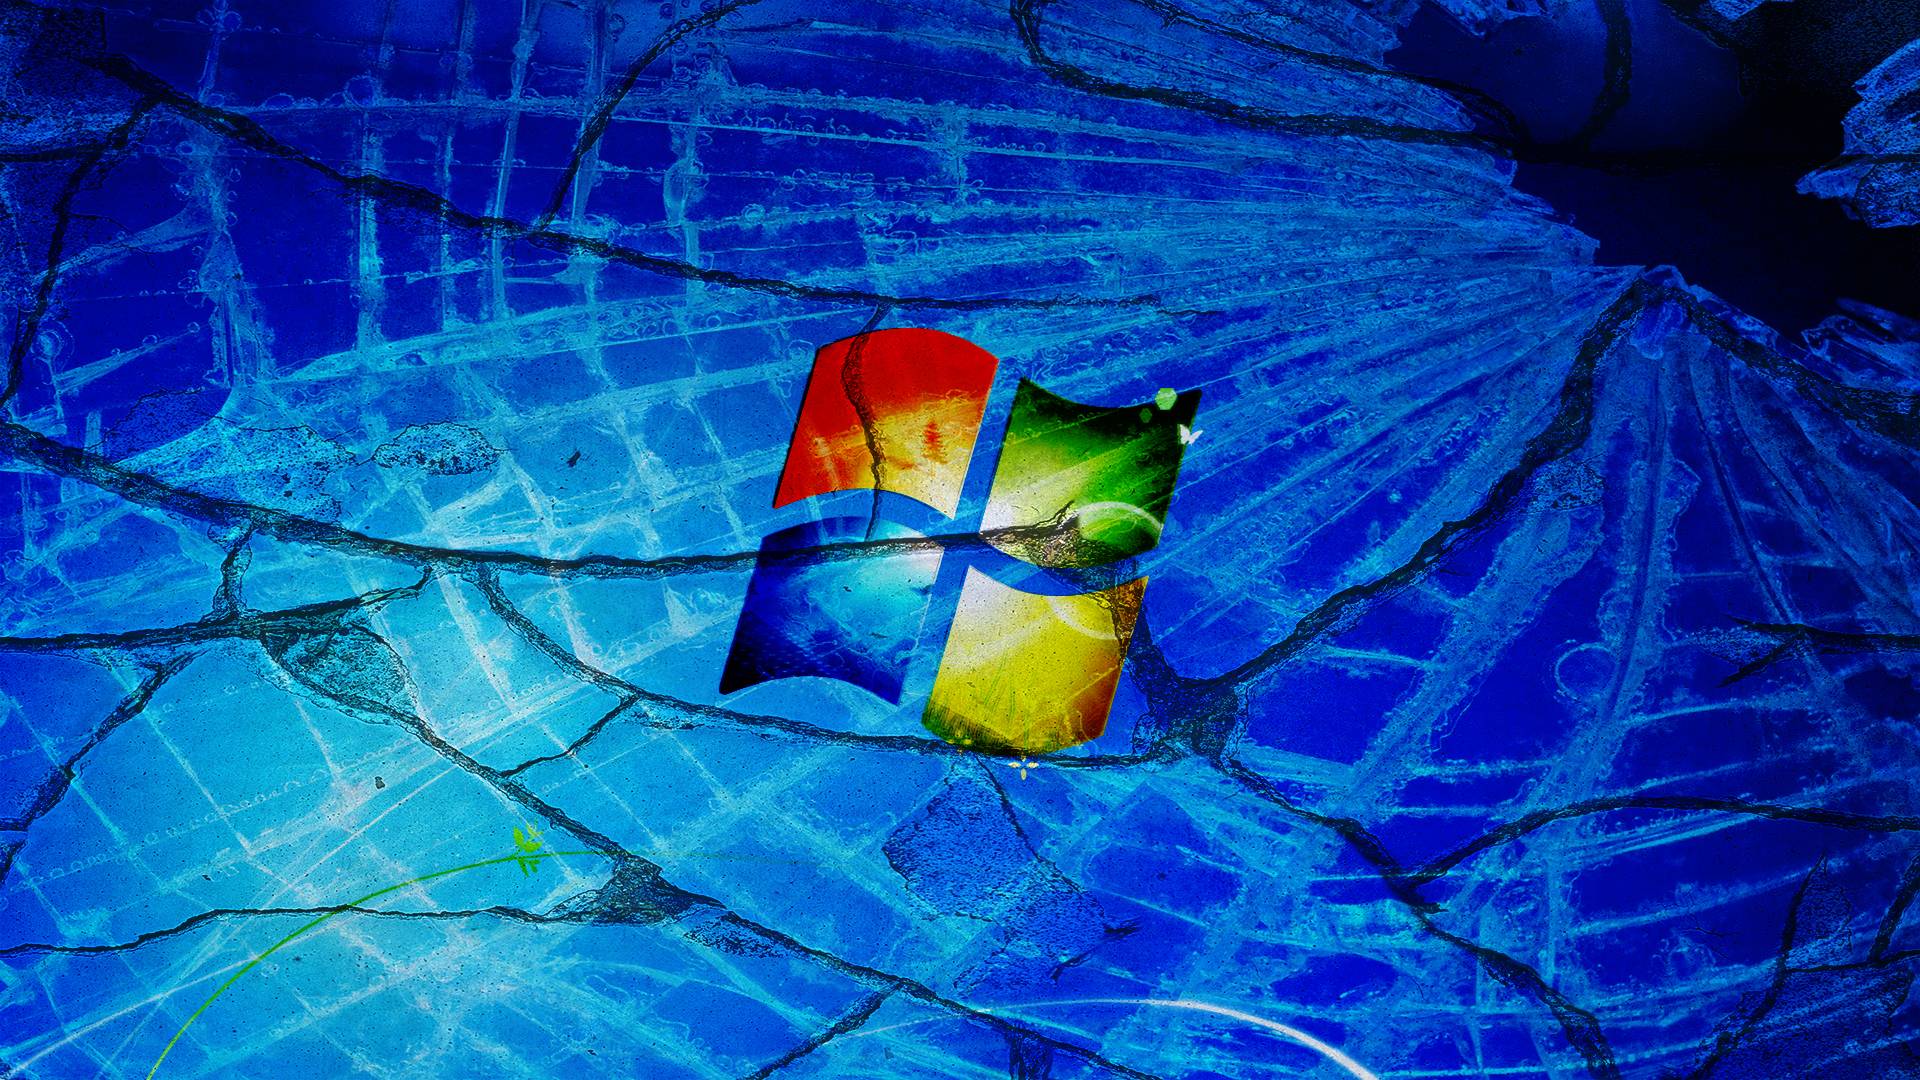 Broken Windows 7 Wallpapers - Wallpaper Cave